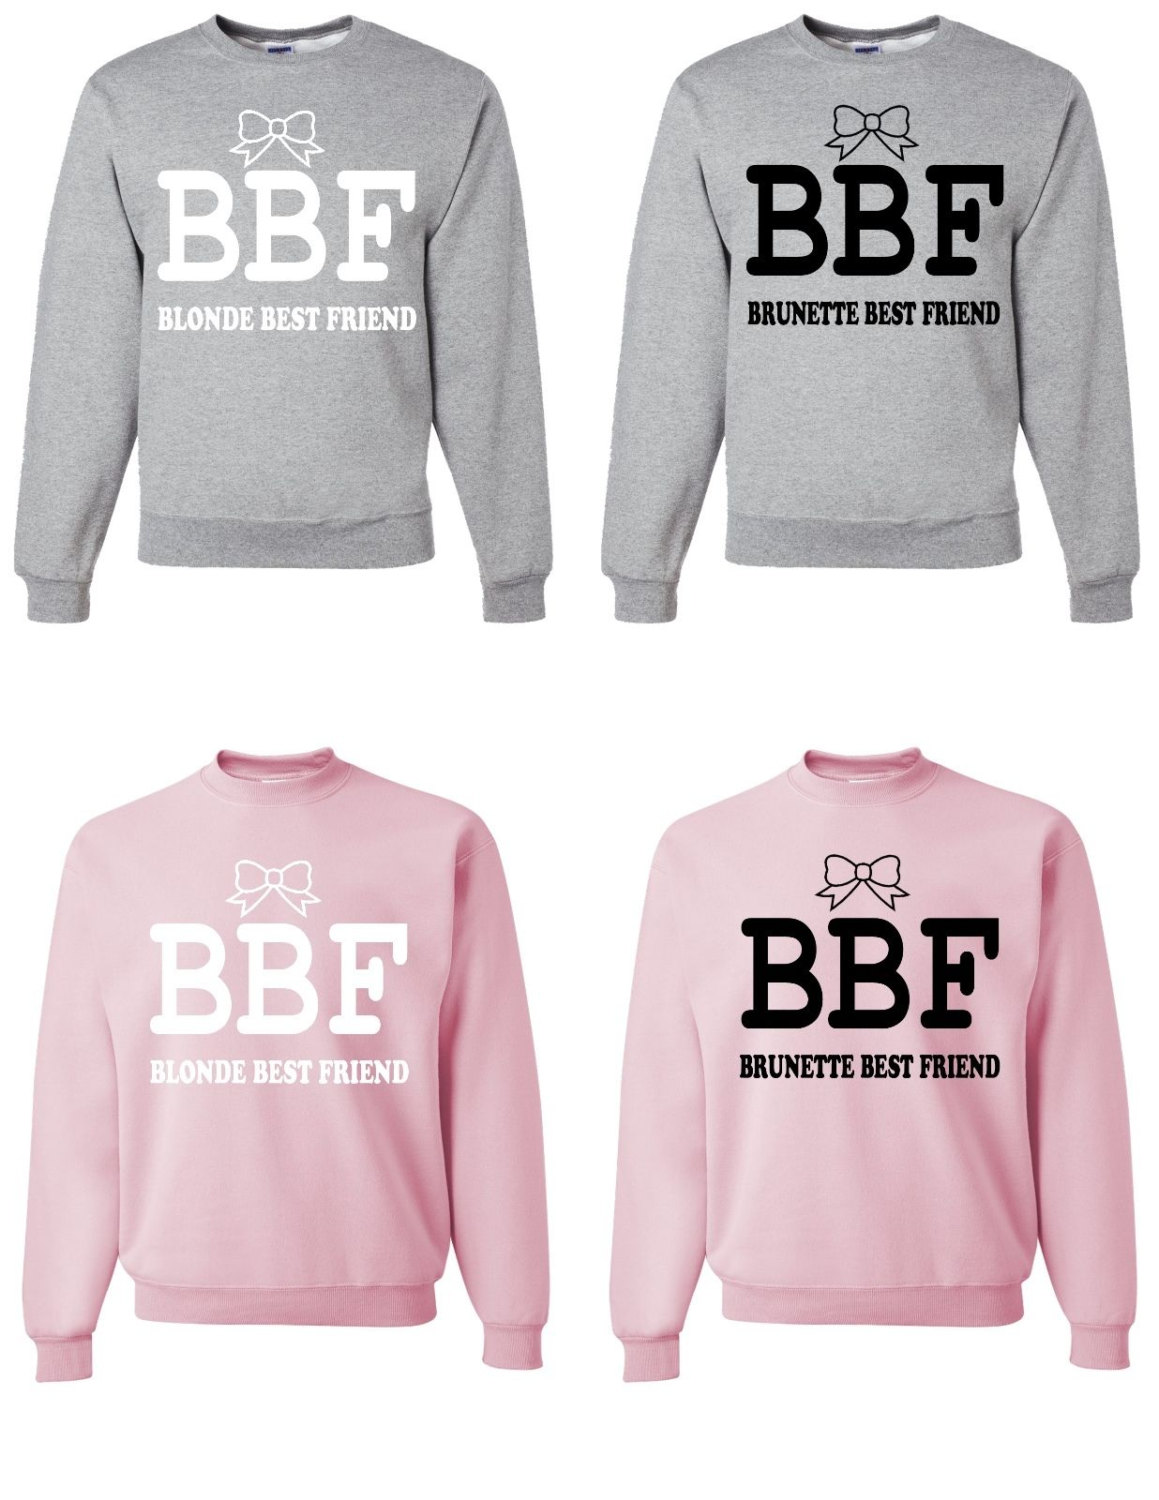 Bff blonde and brunette sweatshirts